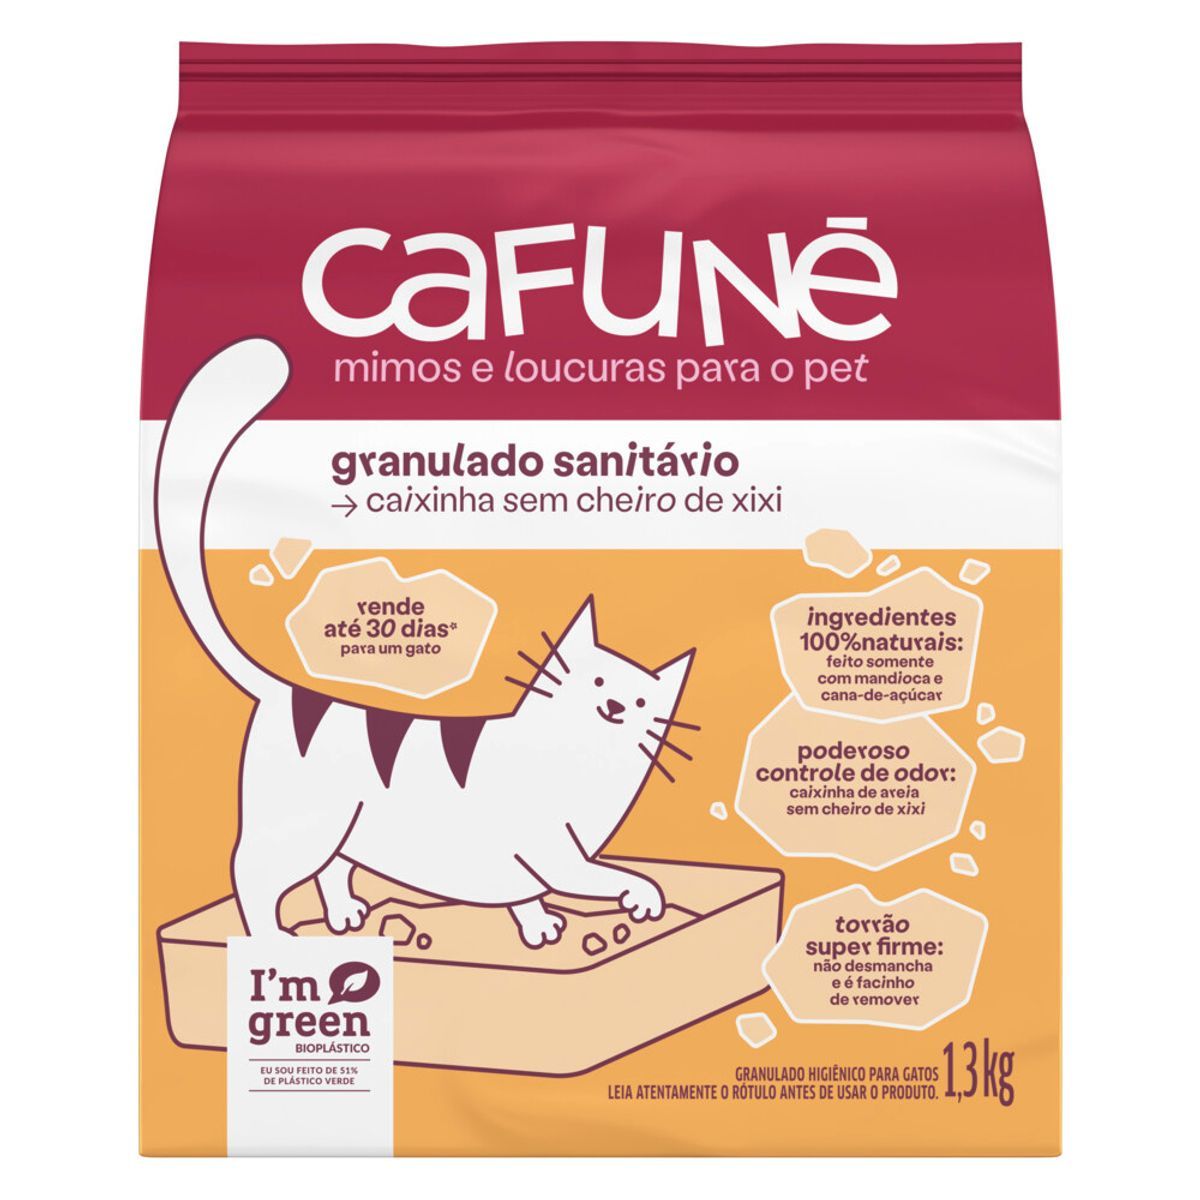 Granulado Sanitário Cafuné para Gatos 1,3kg